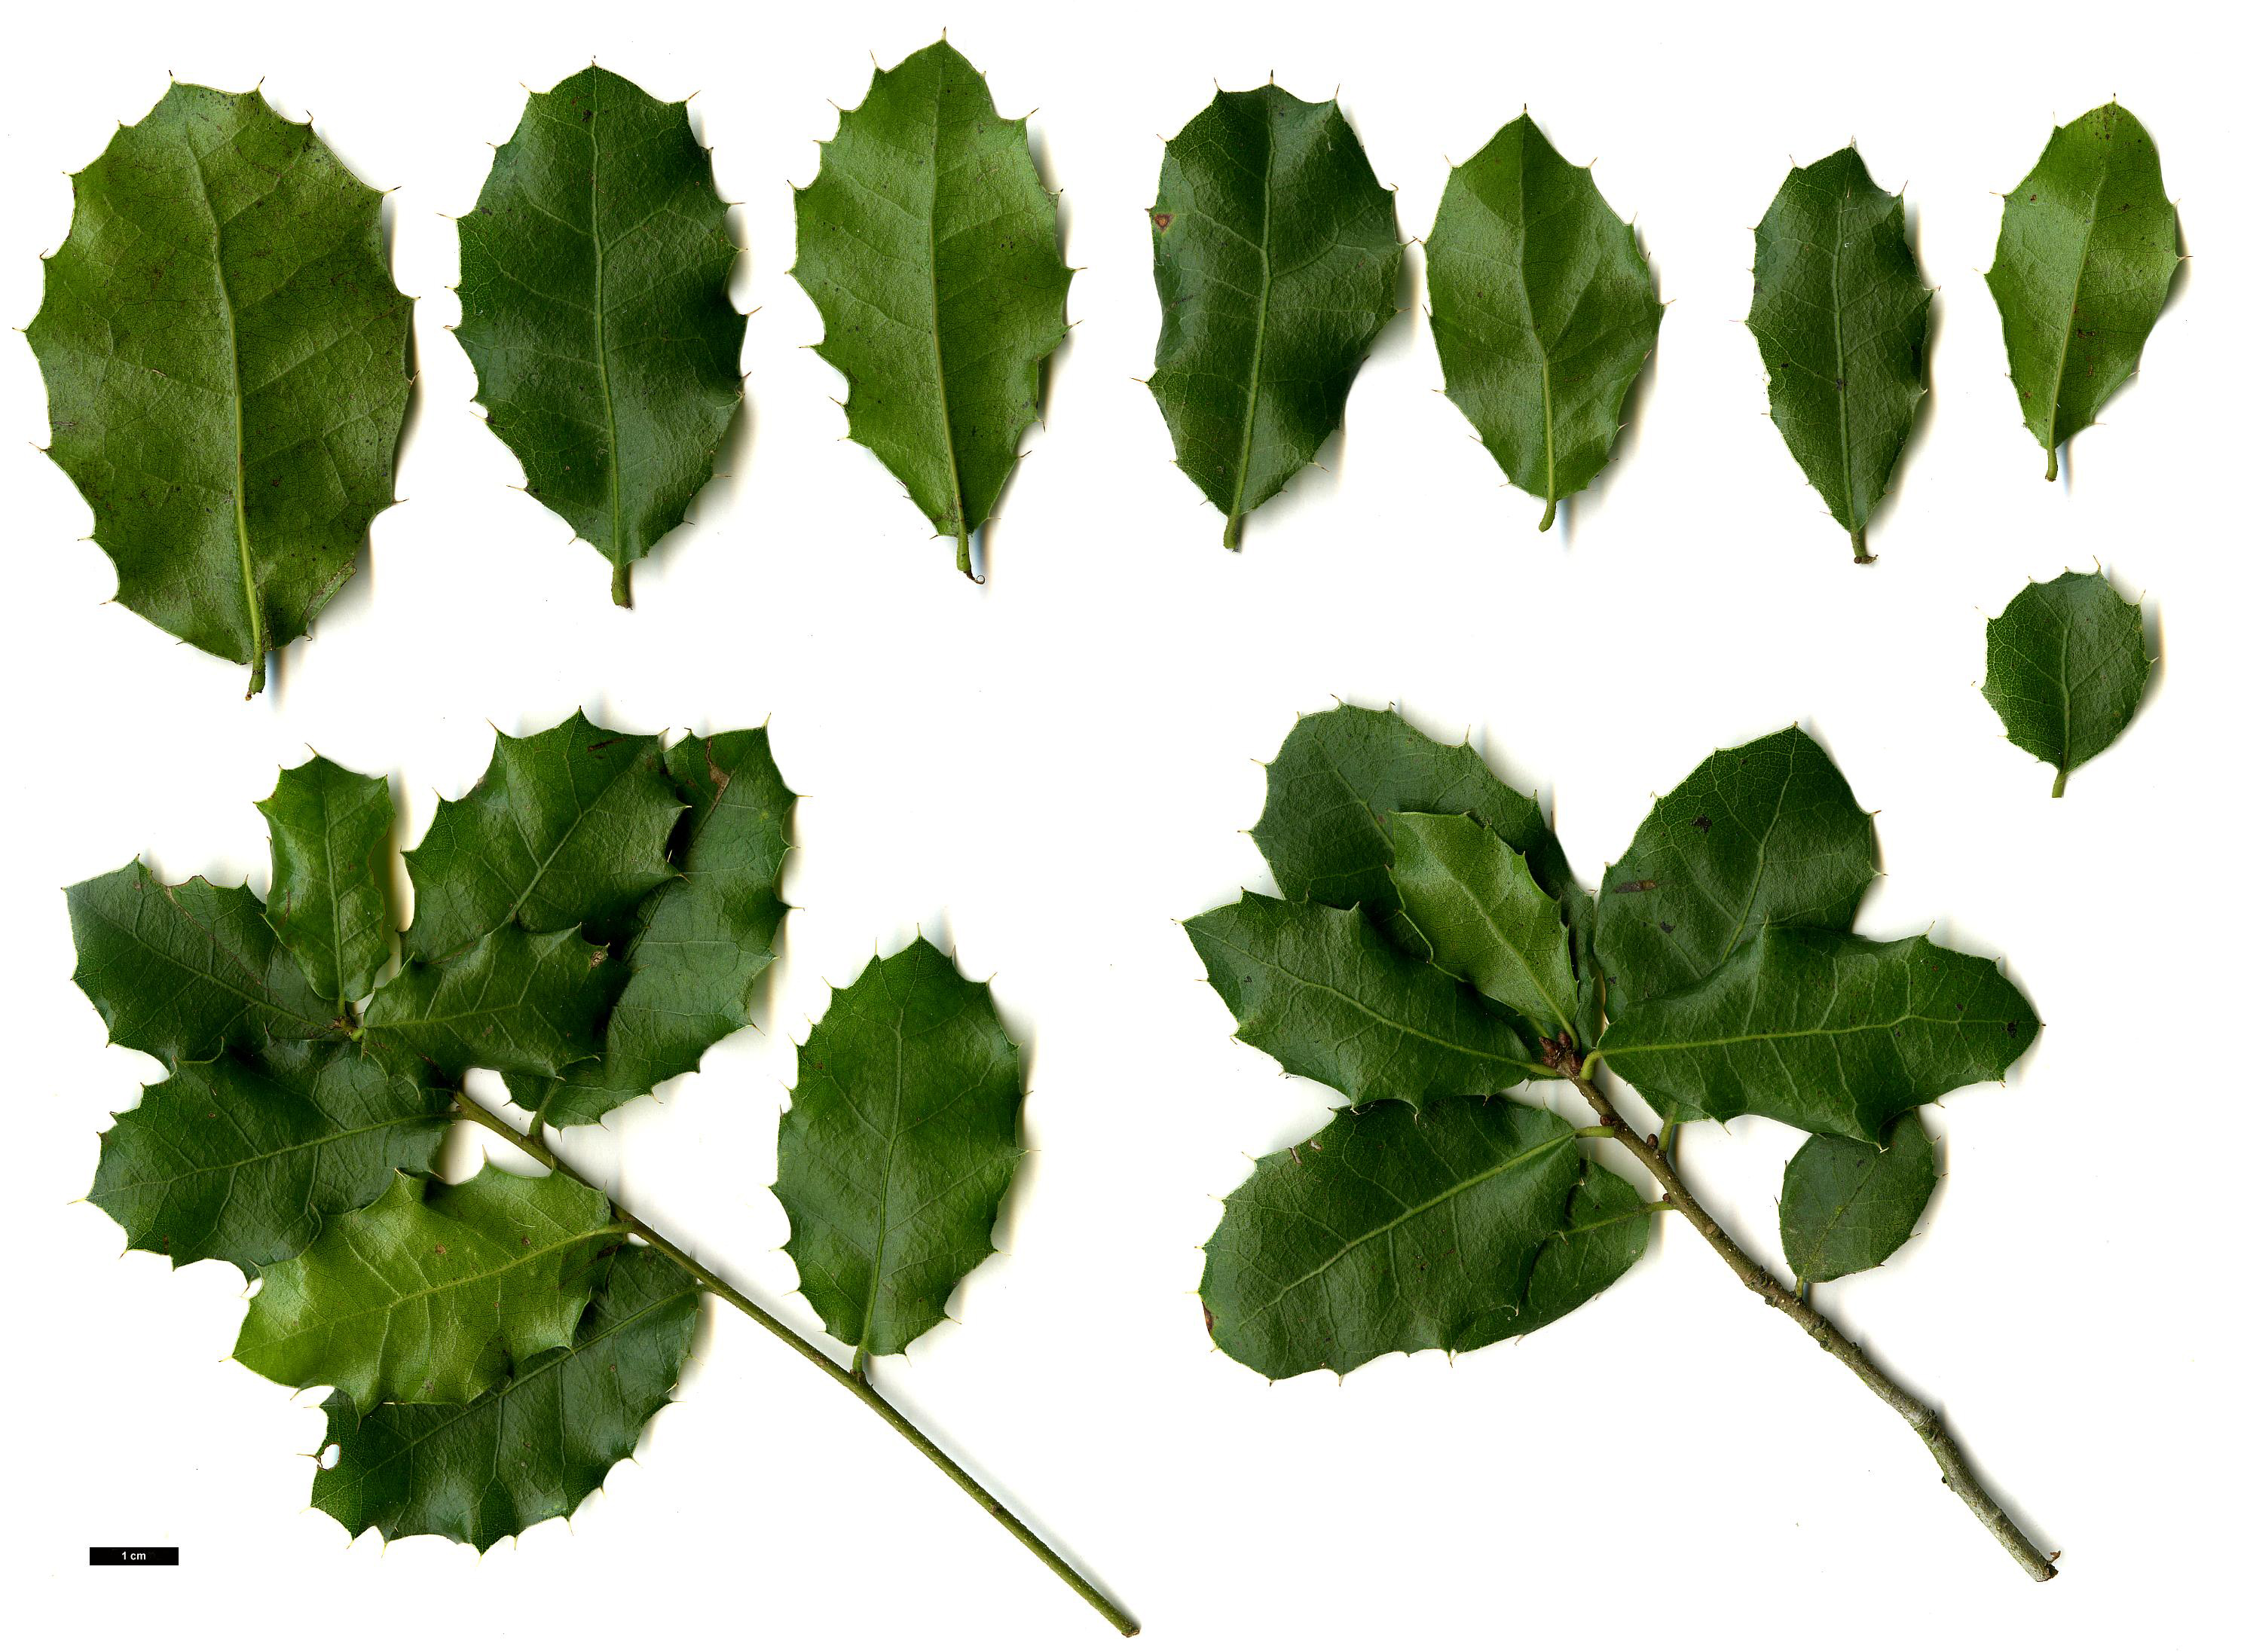 High resolution image: Family: Fagaceae - Genus: Quercus - Taxon: coccifera